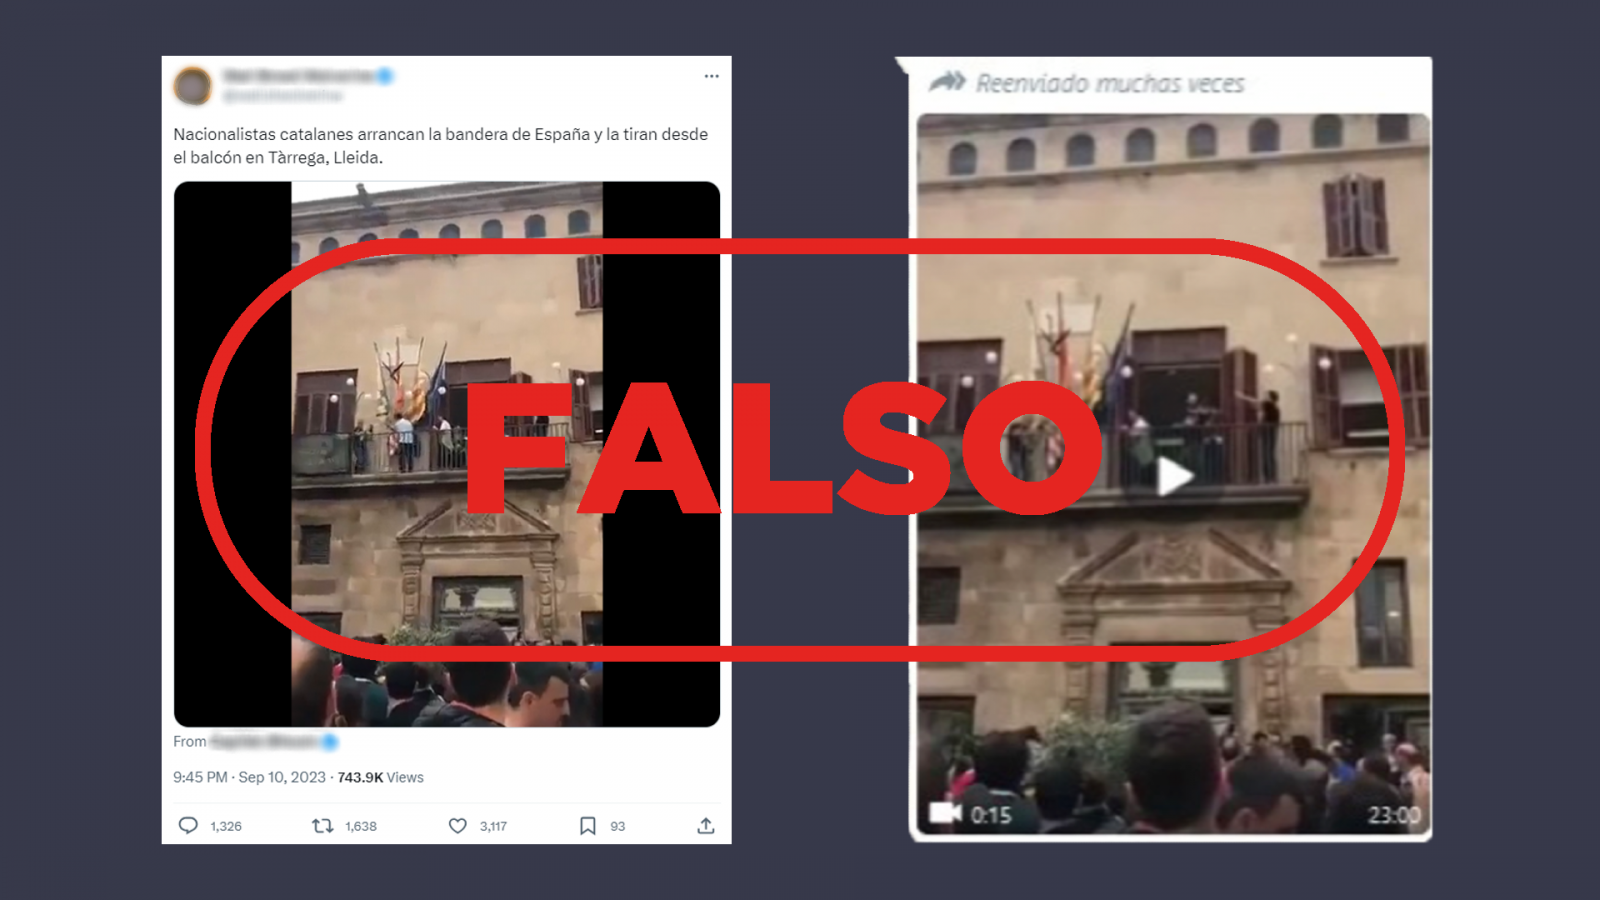 Mensajes en redes sociales que difunden el vídeo antiguo como si fuese actual, con sello Falso en rojo.